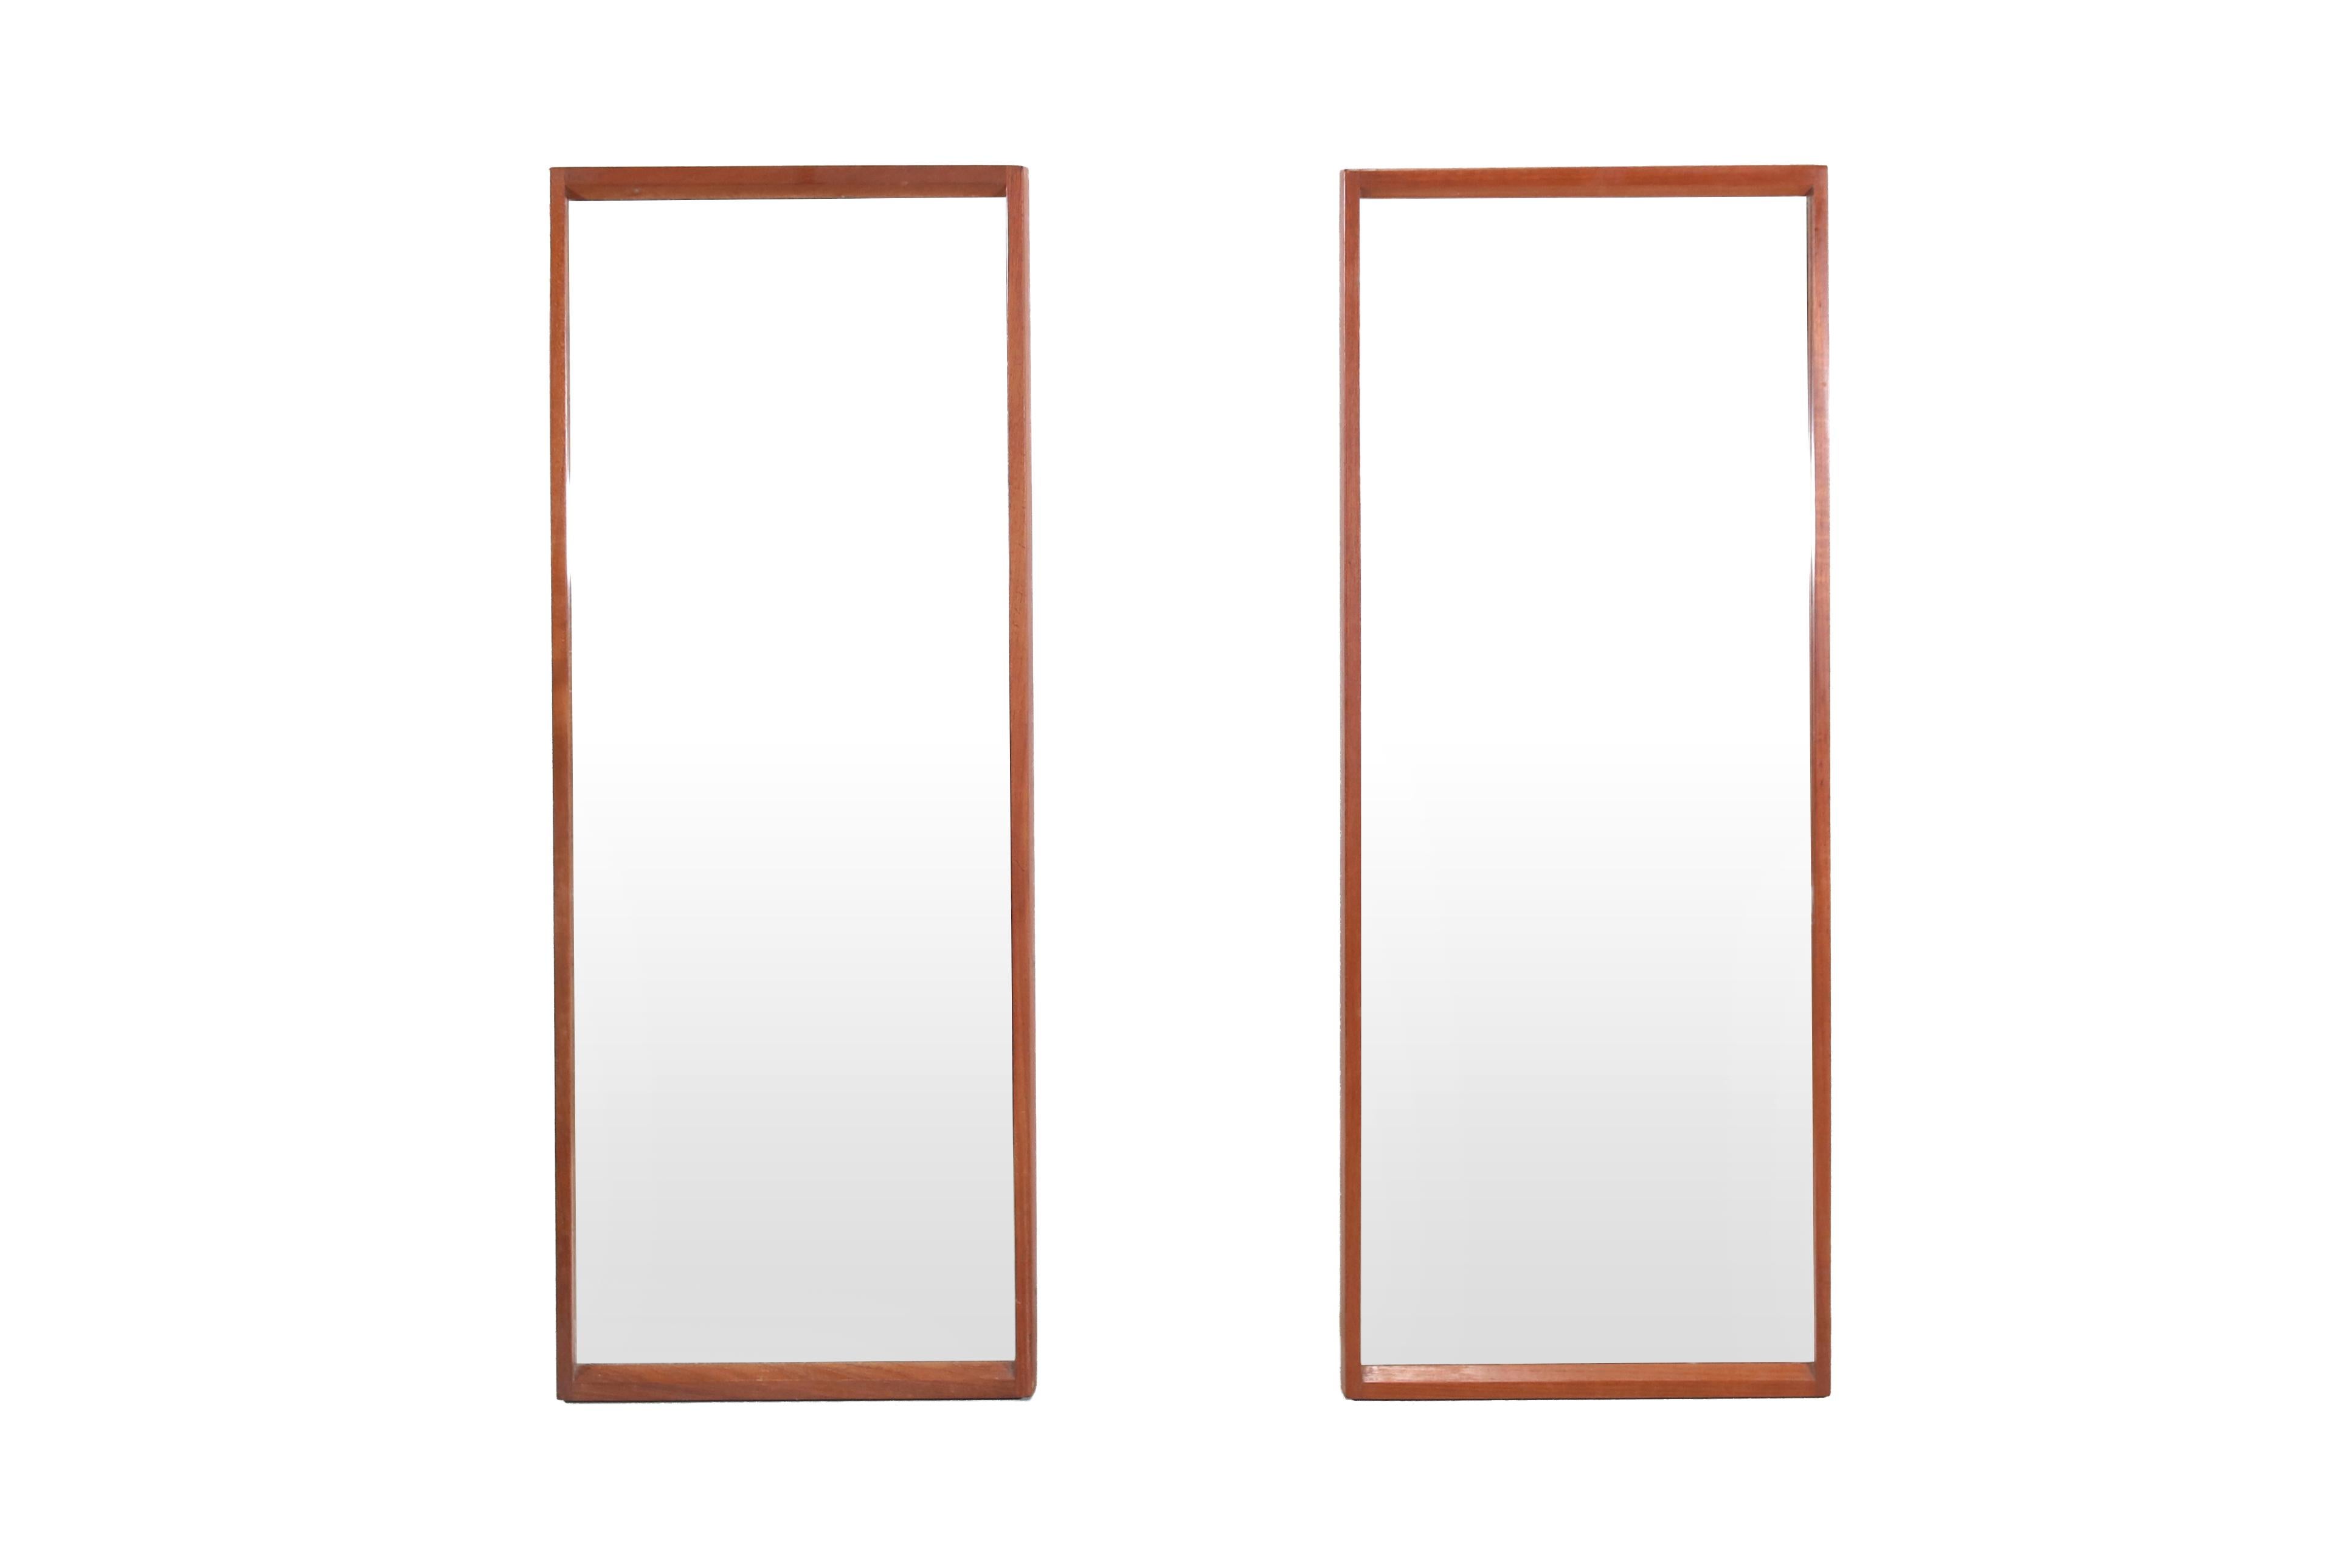 Très bel ensemble de deux miroirs en teck massif conçu par Kai Kristiansen et produit par Aksel Kjersgaard à Odder au Danemark. Ces miroirs sont marqués au dos et présentent des détails fantastiques. Par exemple, ce miroir a un raccord en bois